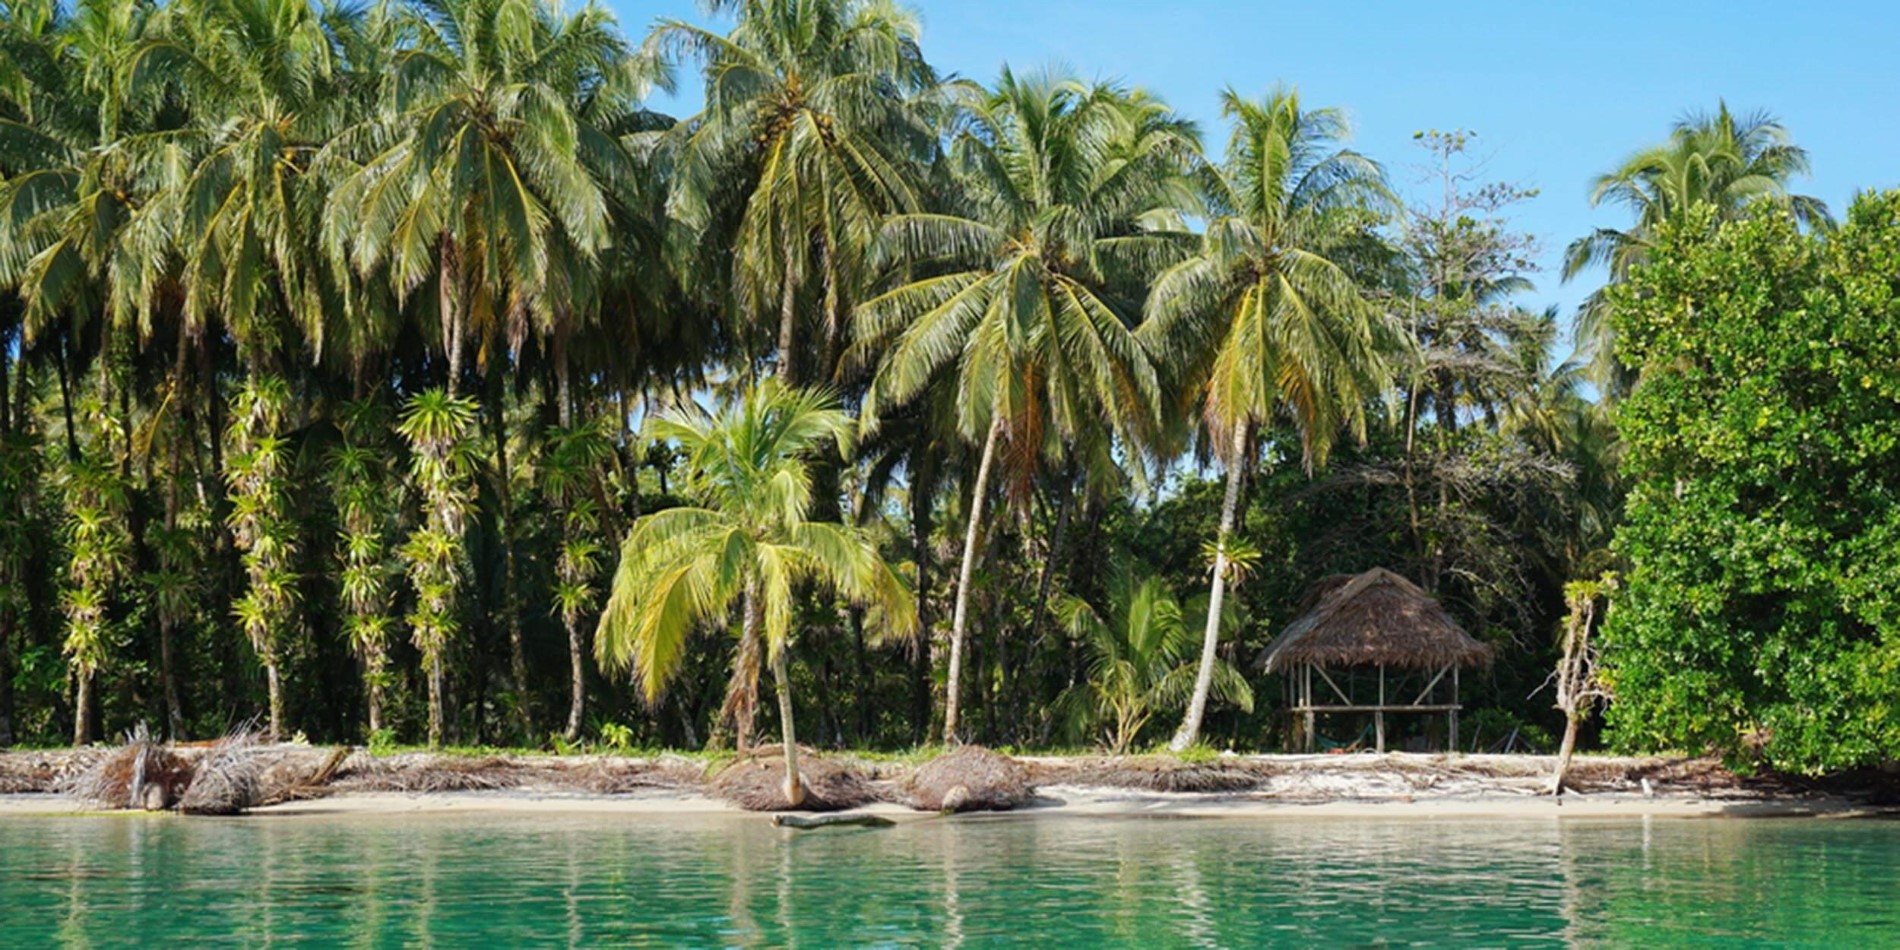 En gruppe af palmetræer ved siden af en vandmængde